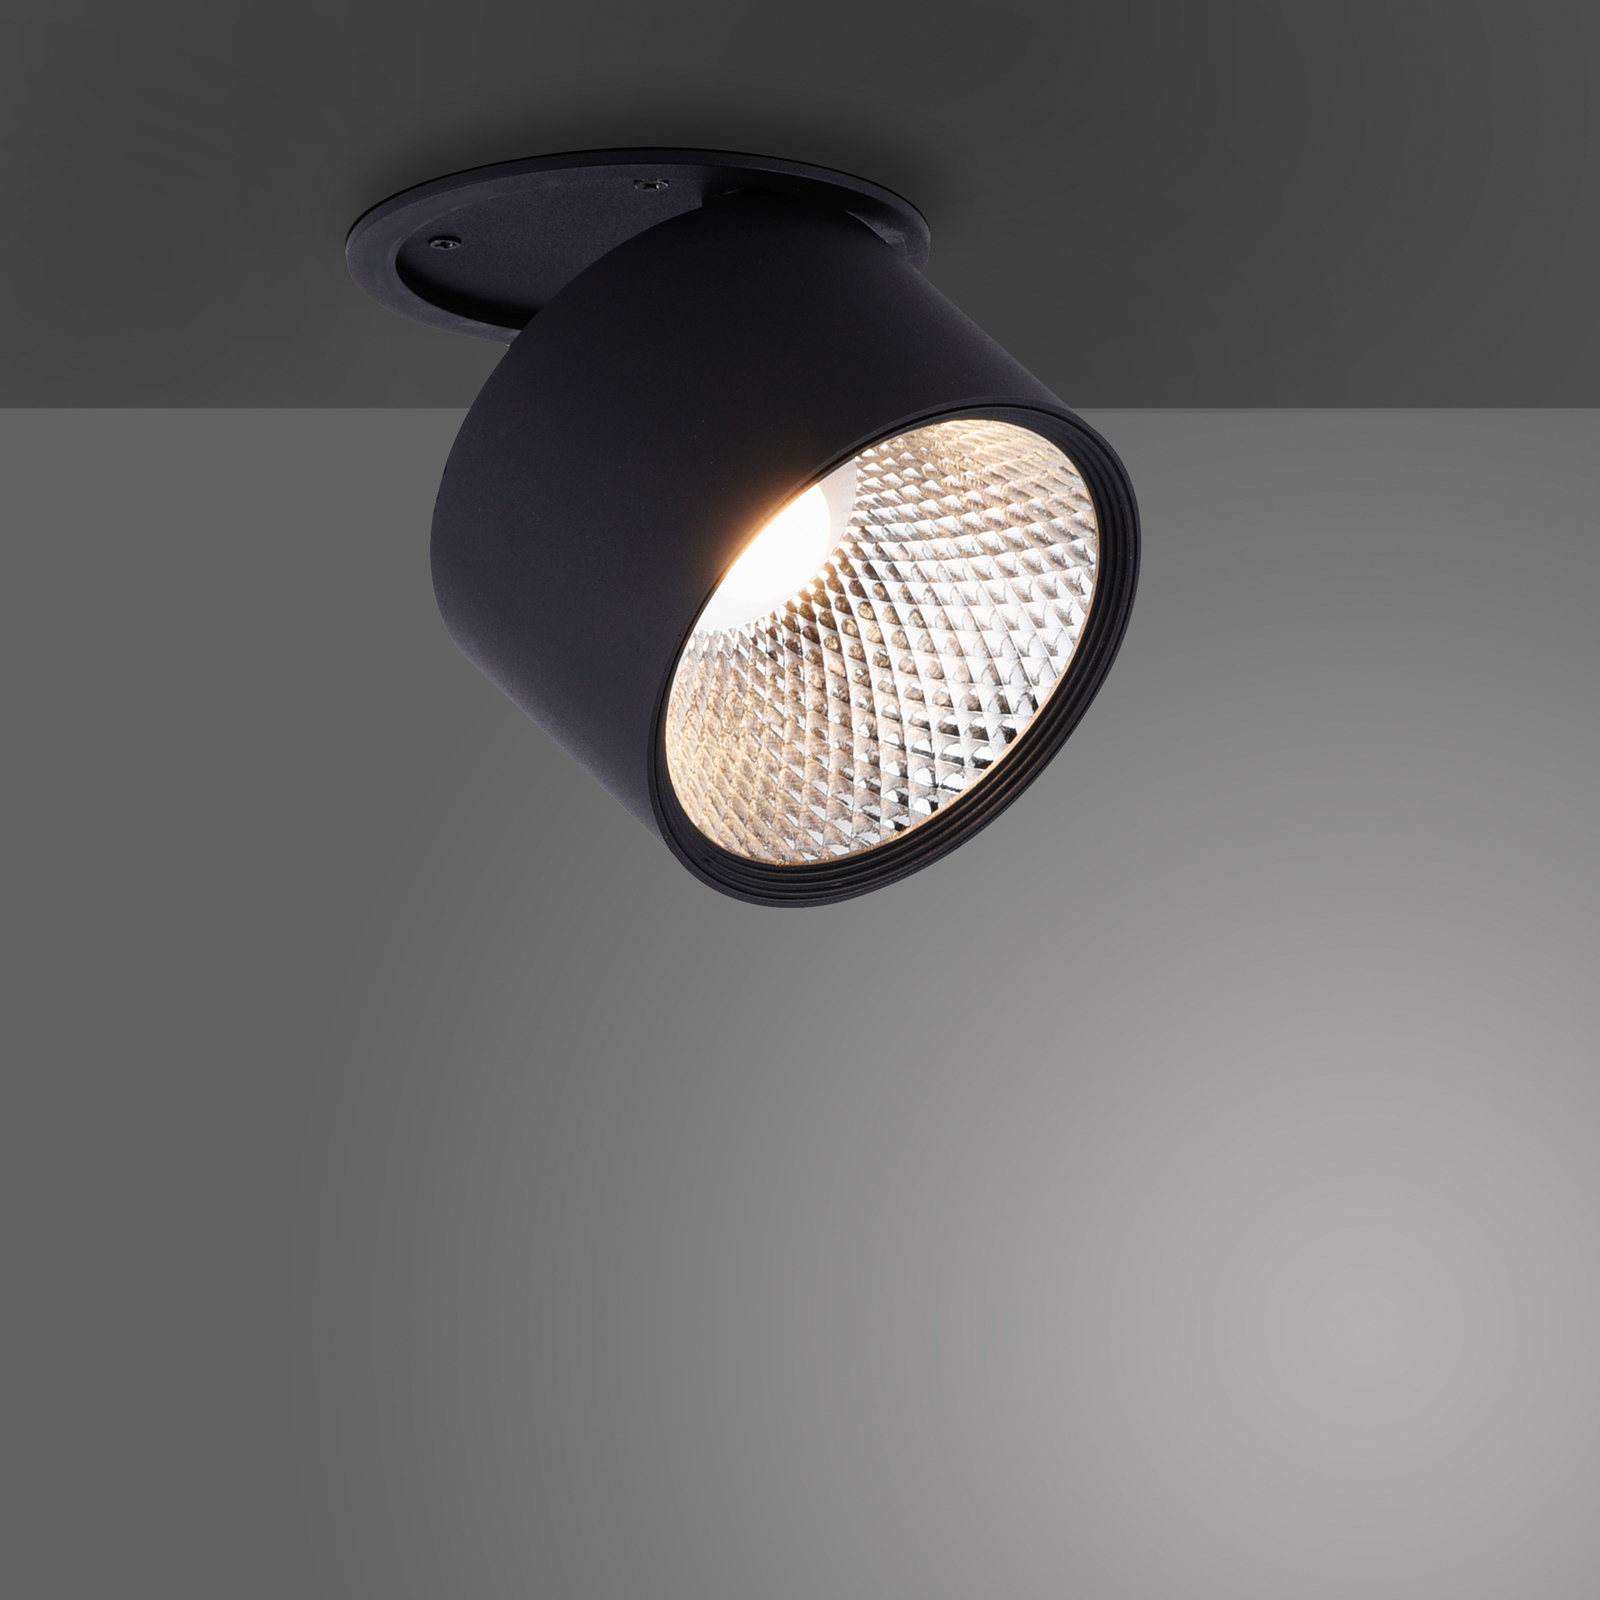 Pure Nola LED plafondlamp 1-lamp zwart